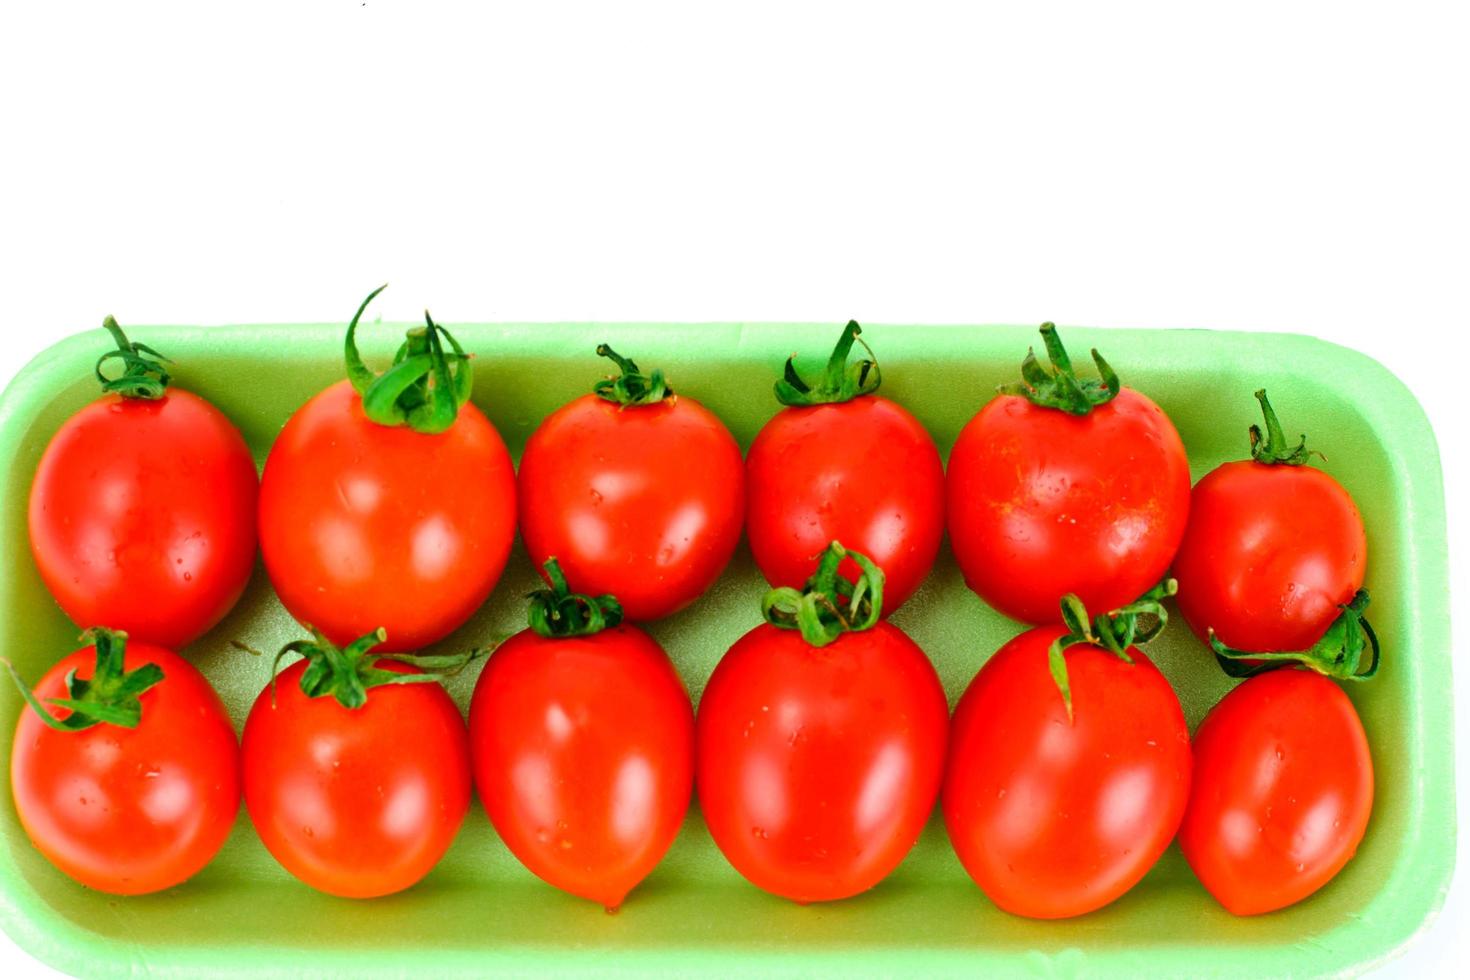 röda tomater isolerad på en vit bakgrund foto